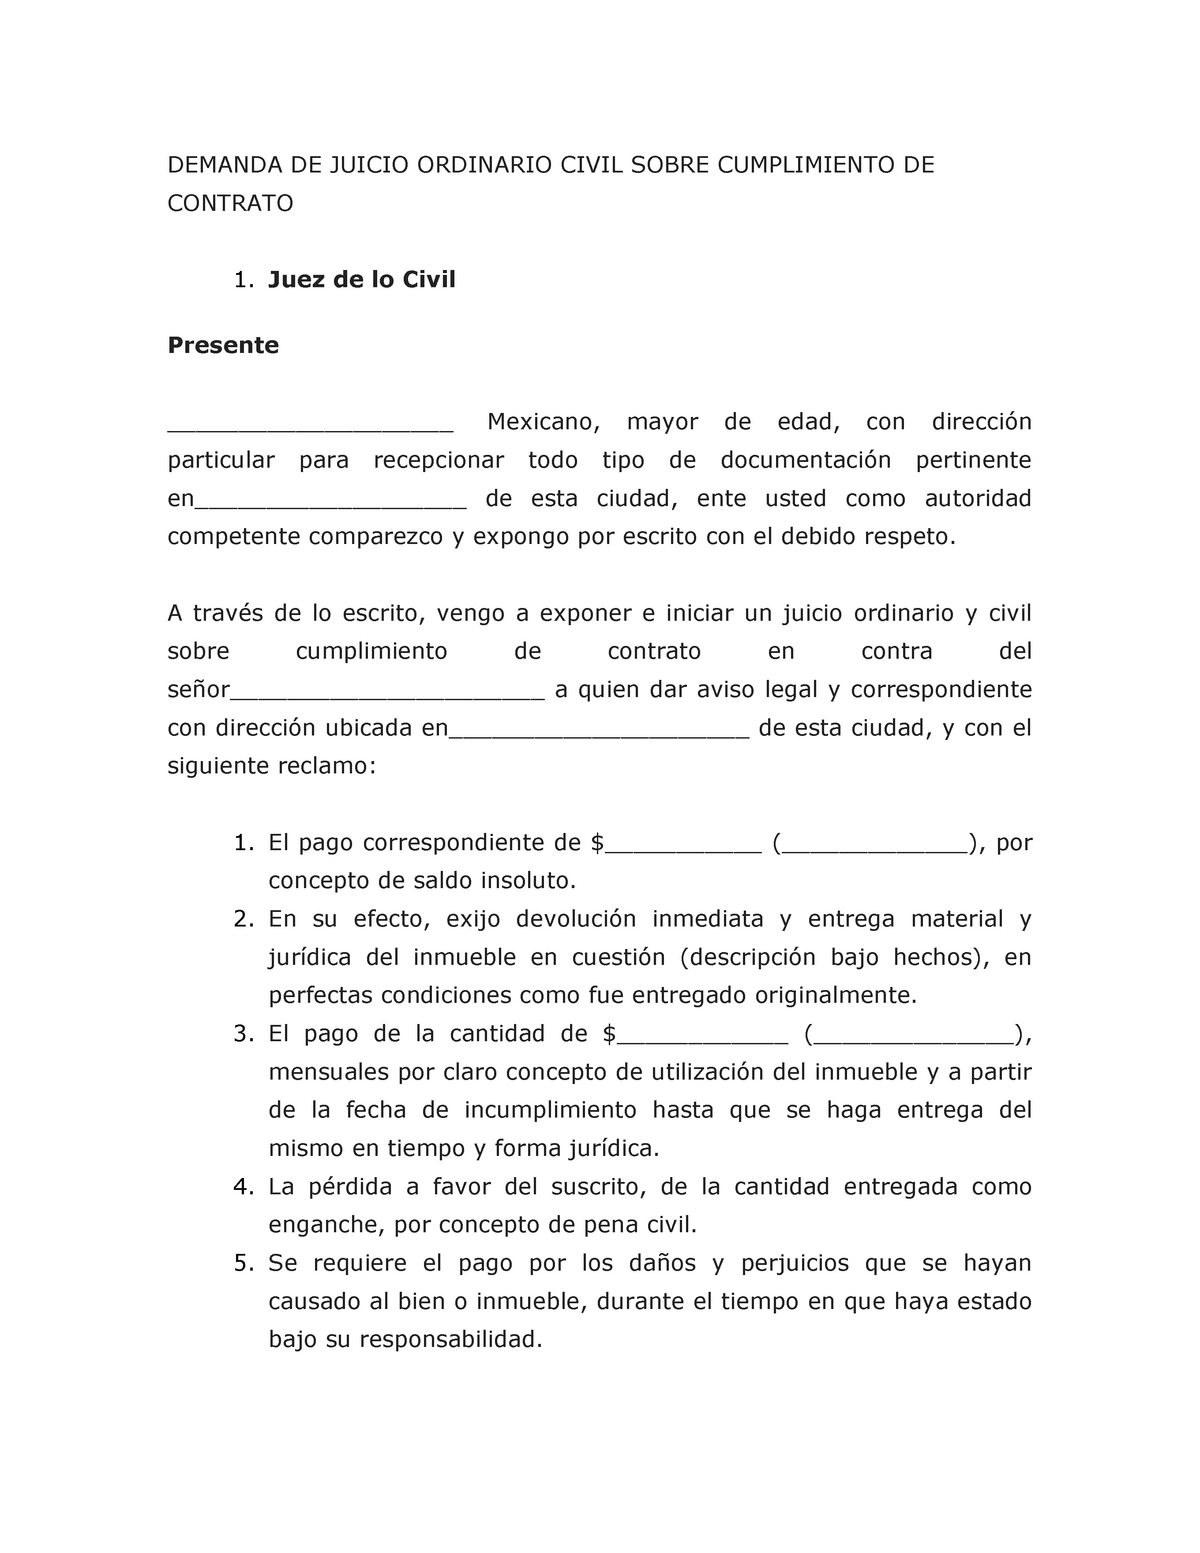 Formato Demanda DE Juicio Ordinario Civil Sobre Cumplimiento DE Contrato -  DEMANDA DE JUICIO - Studocu